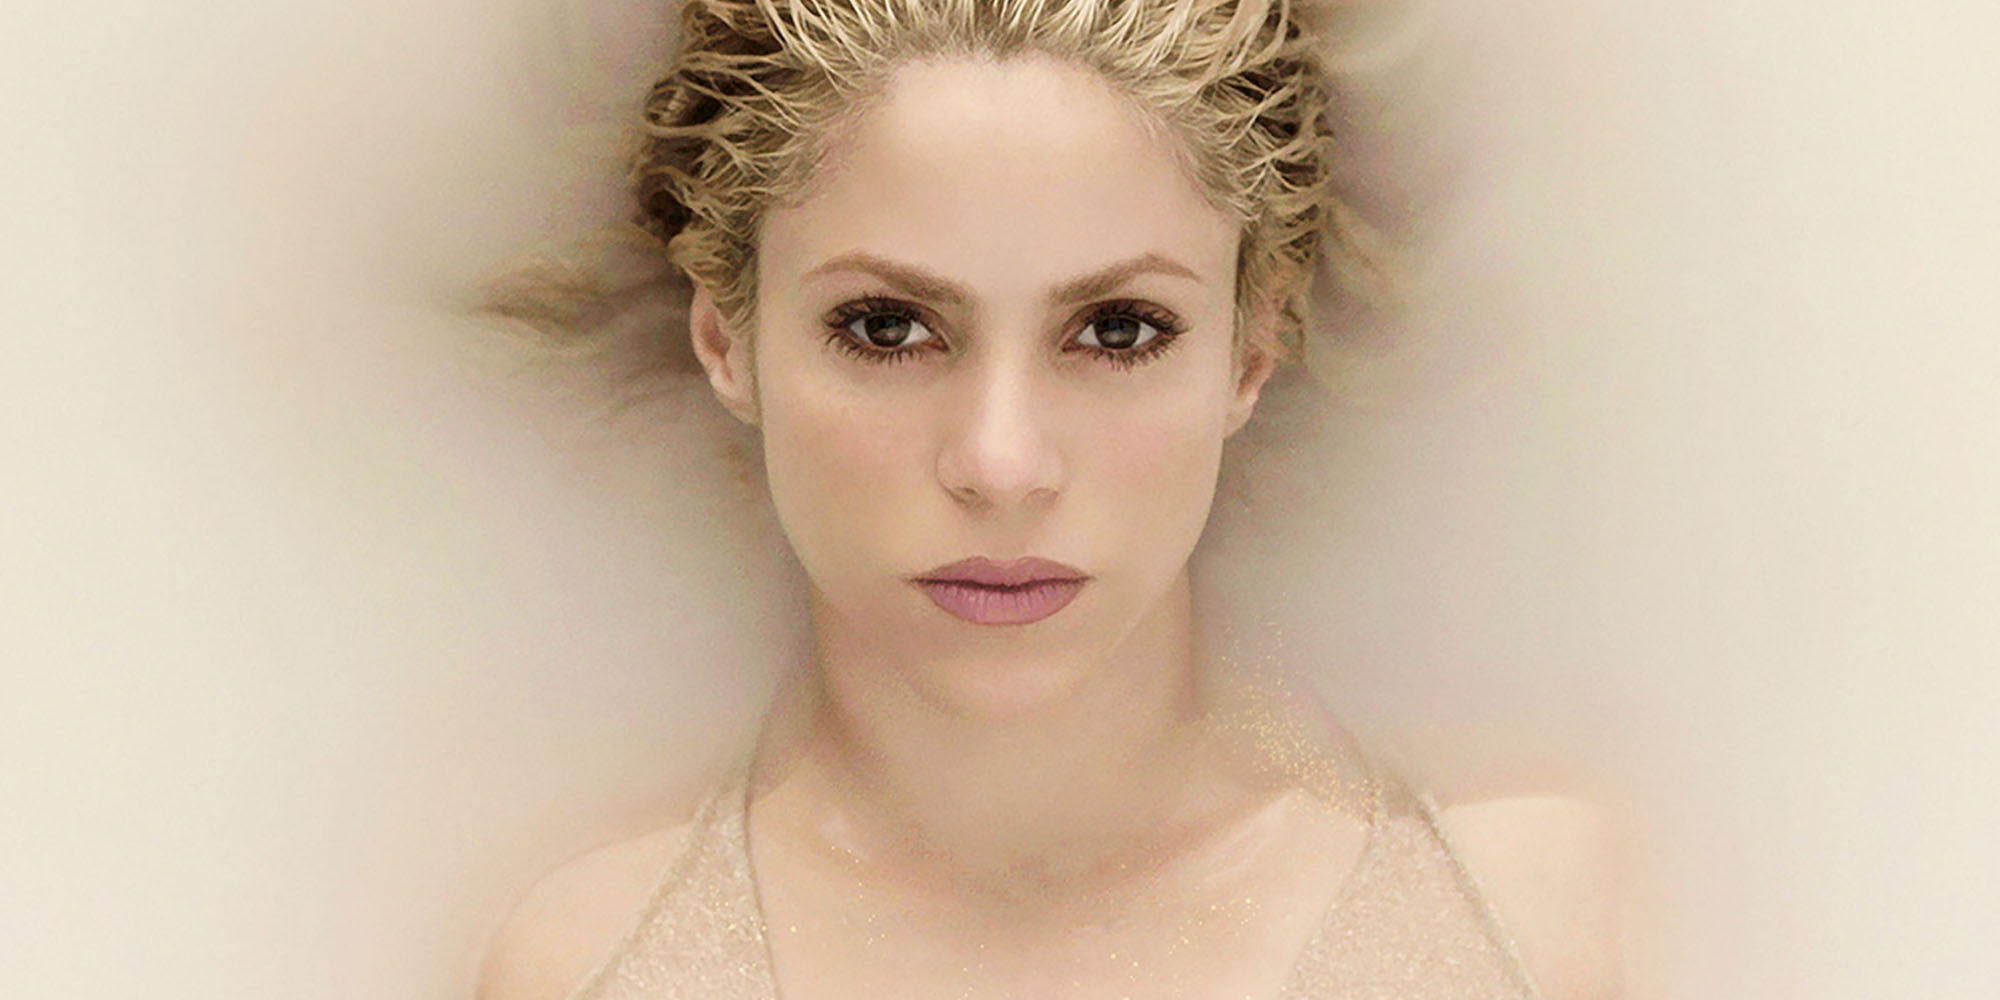 Tras el éxito de 'Me enamoré', Shakira lanza nuevo disco: 'El Dorado'